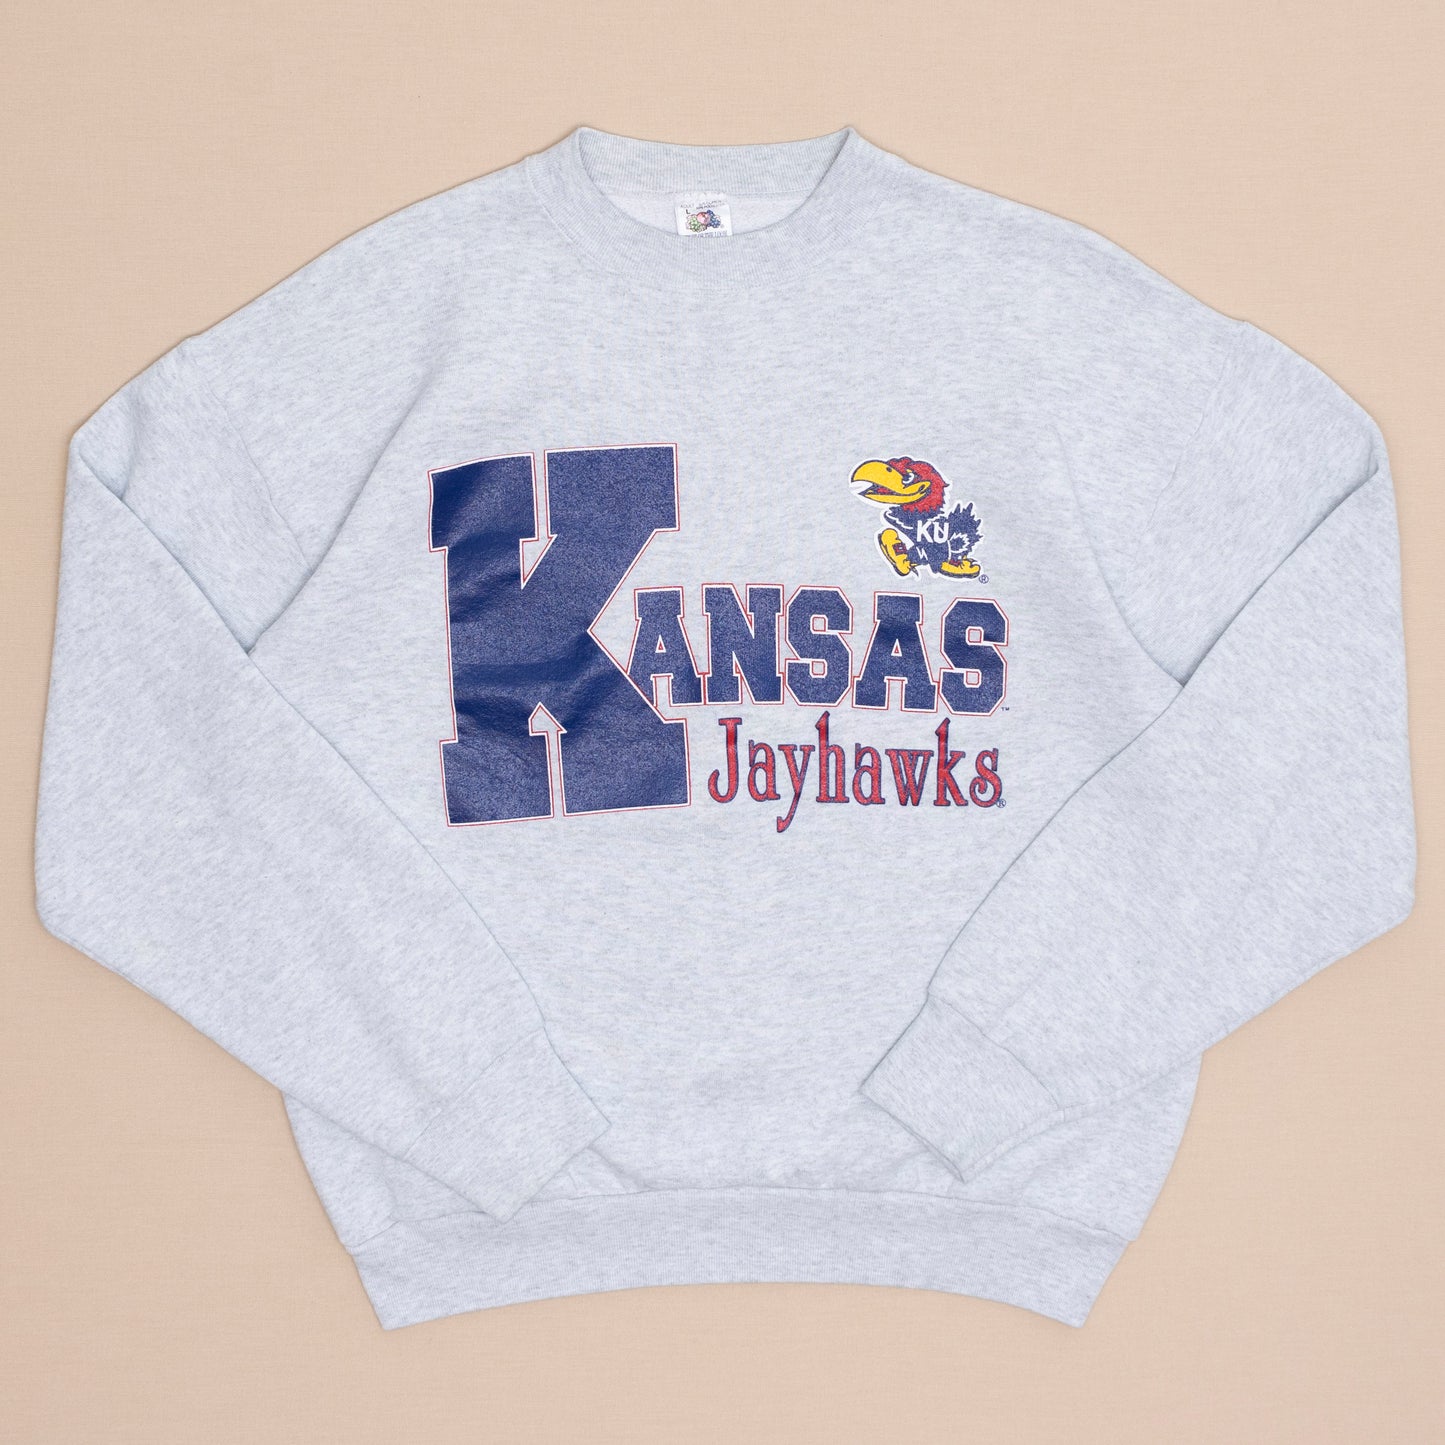 Kansas Jayhawks Sweater, L